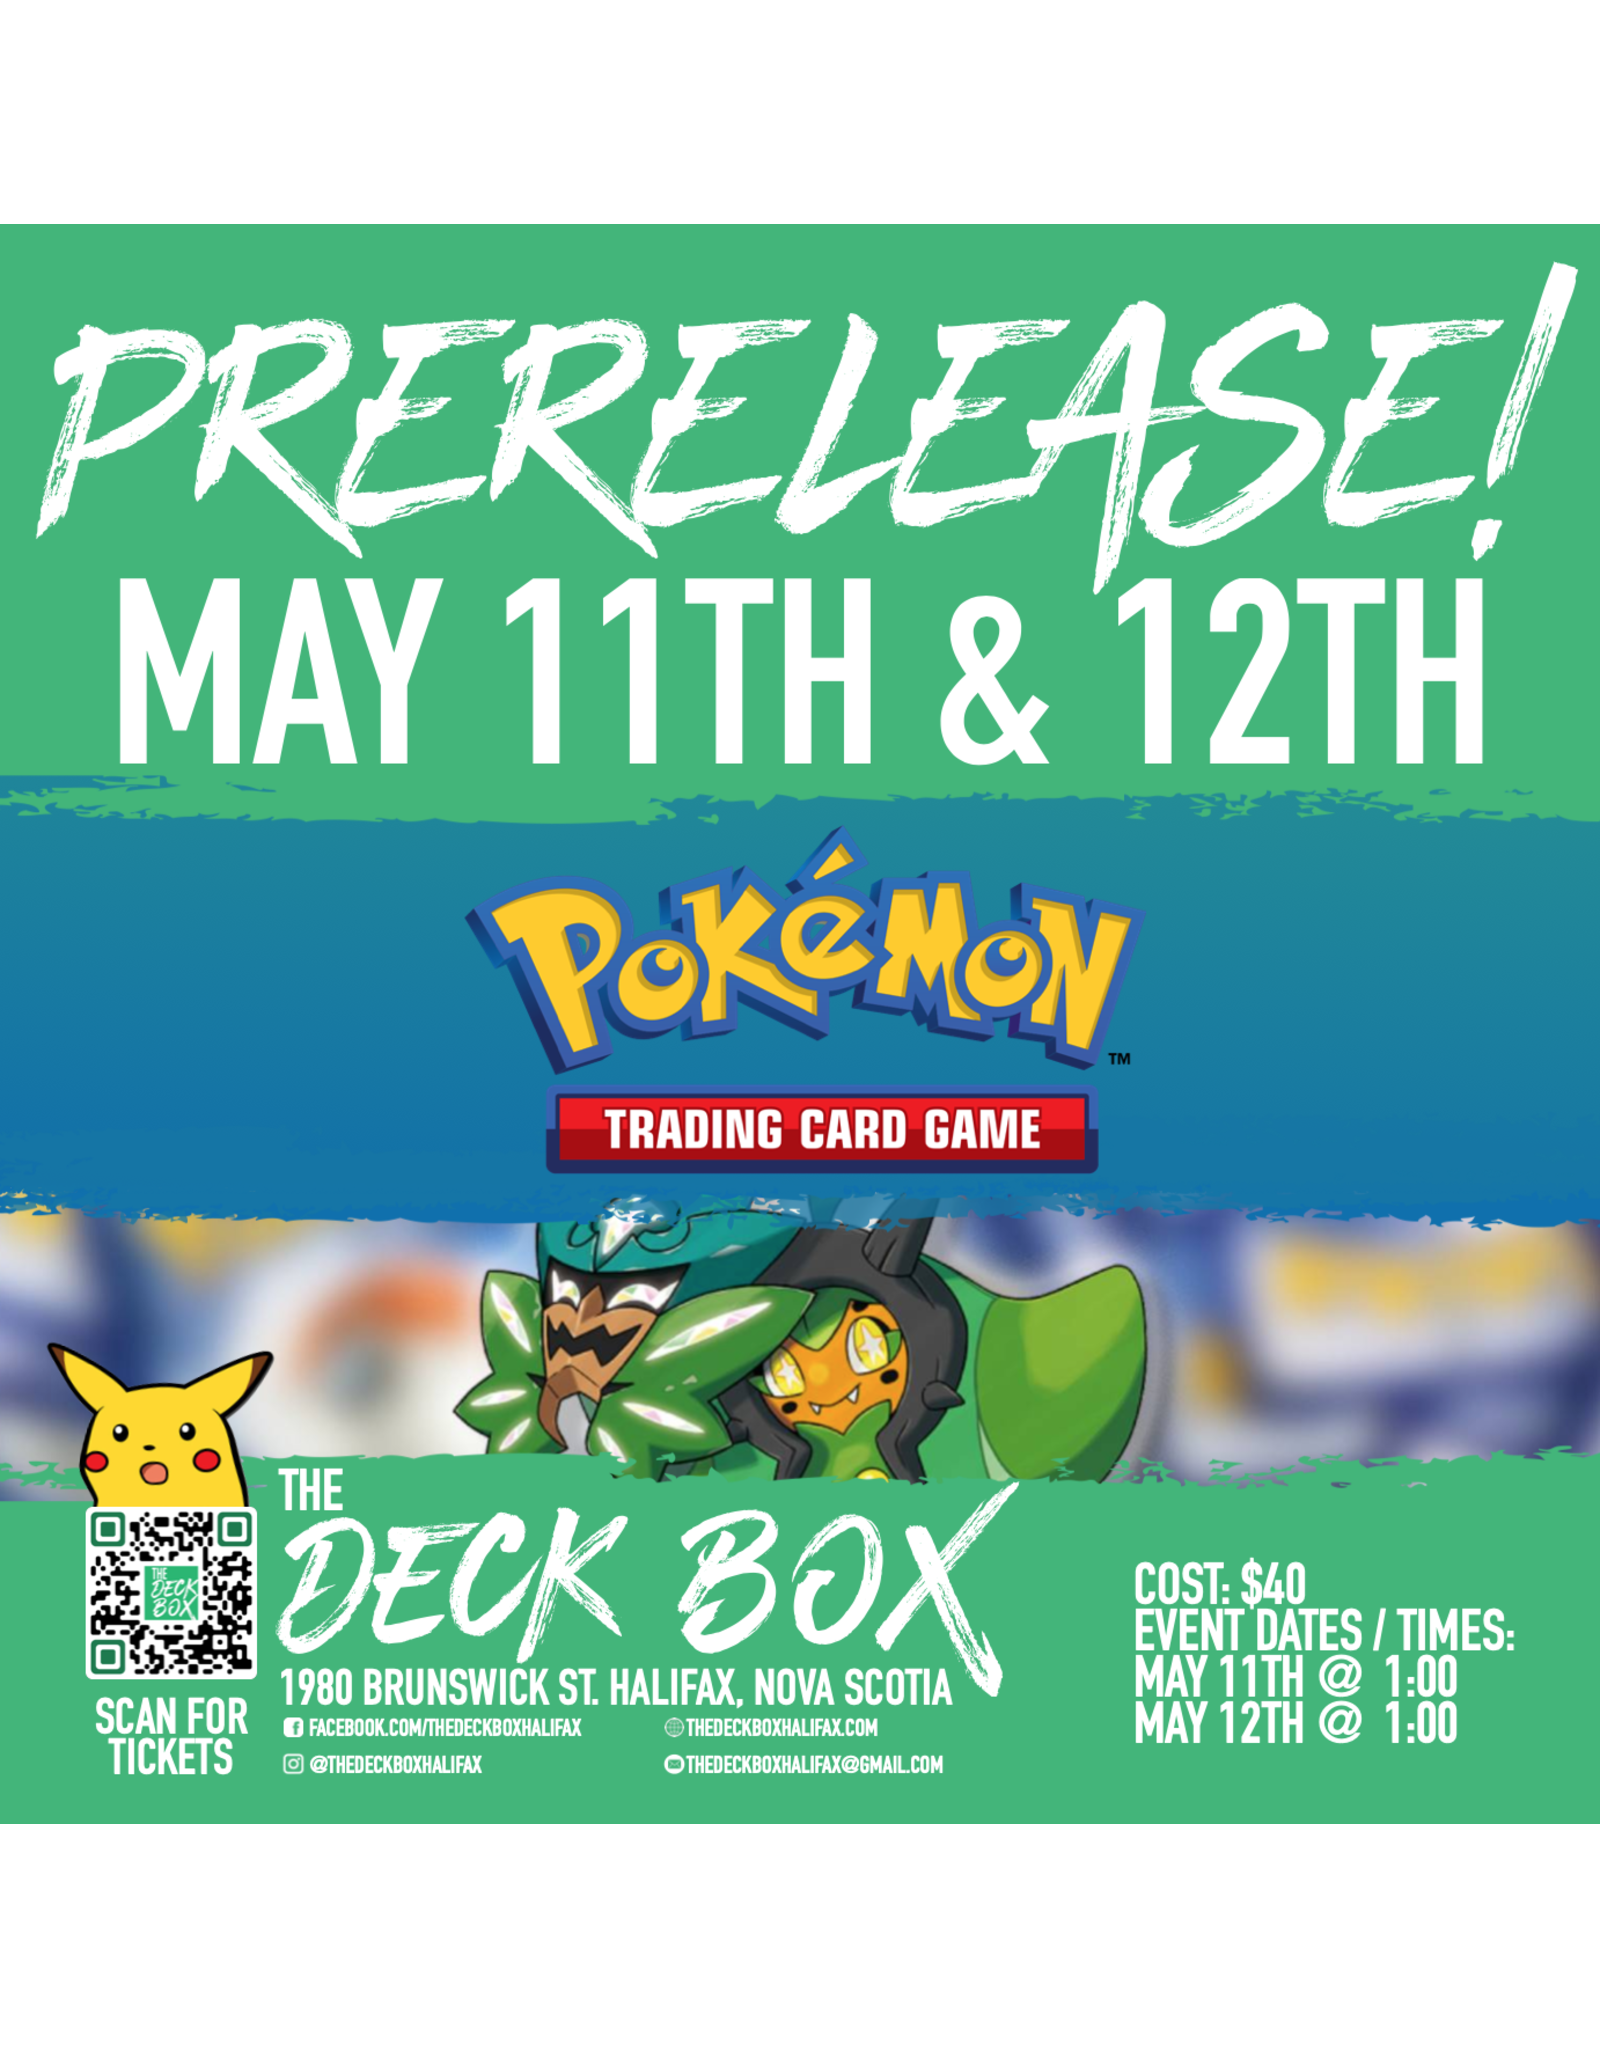 Events (Saturday May 11th @ 1:00) Pokemon Prerelease! Twilight Masquerade